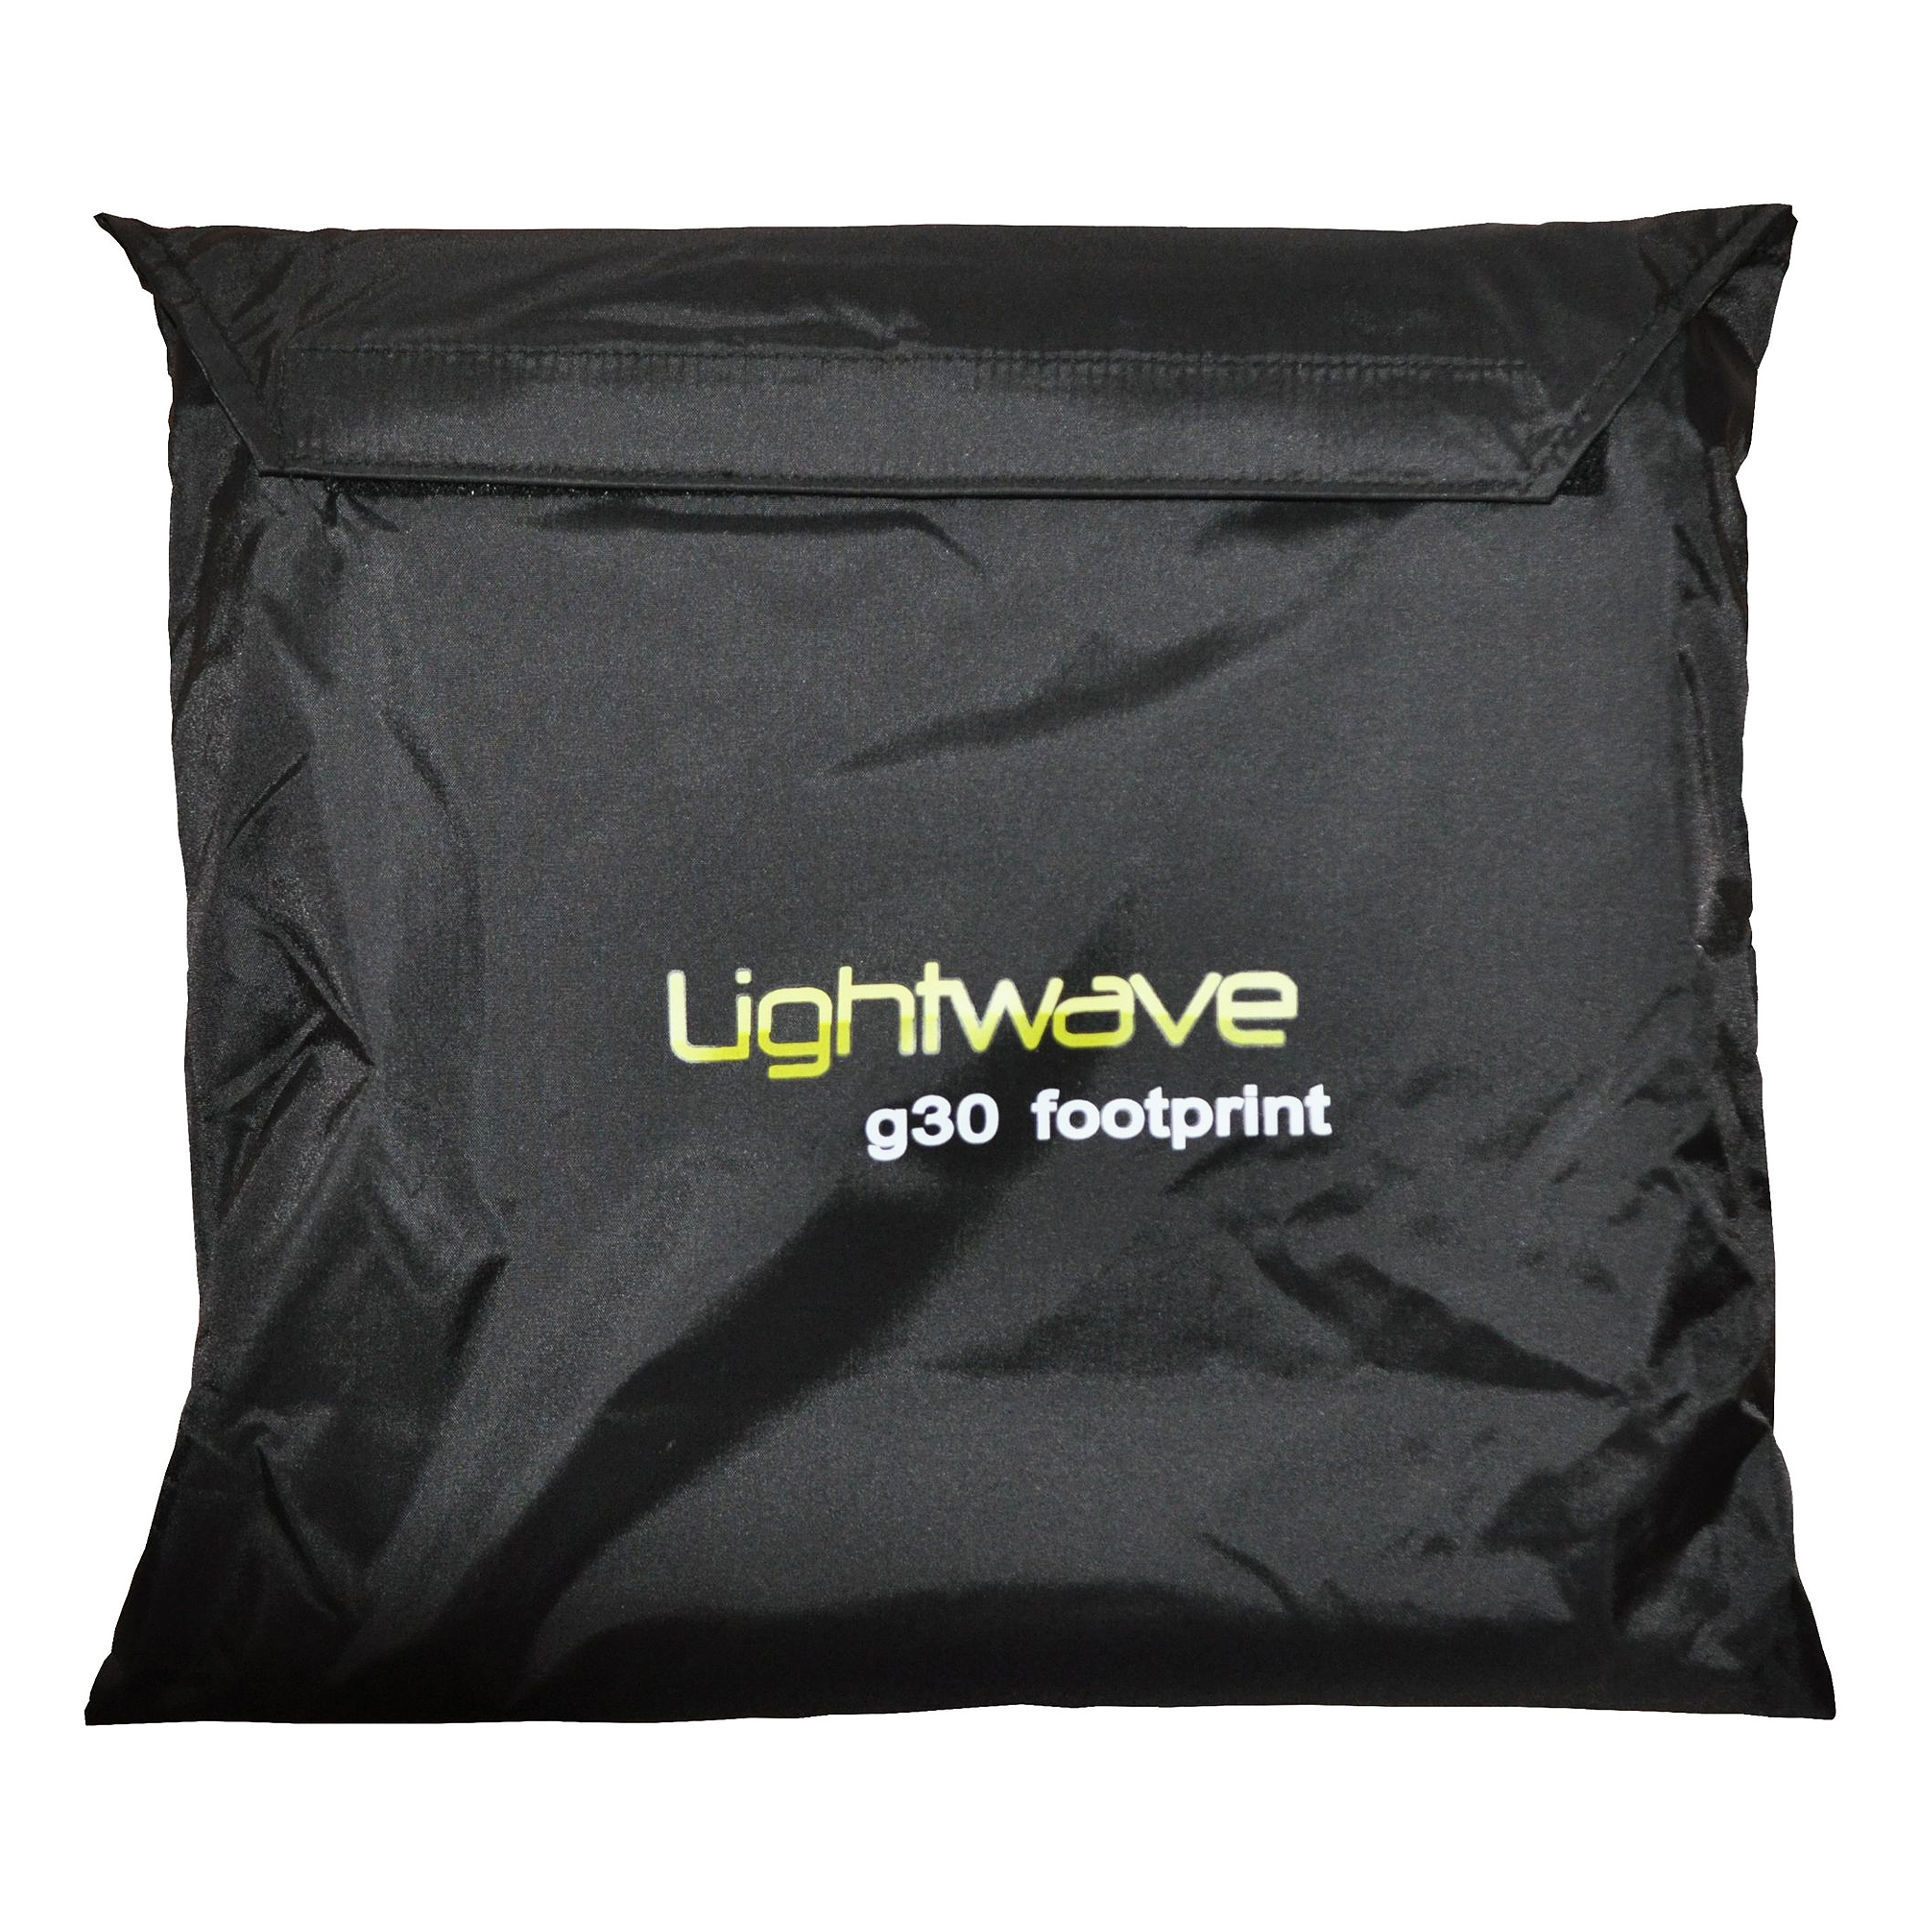 Lightwave g30 extended vestibule groundsheet